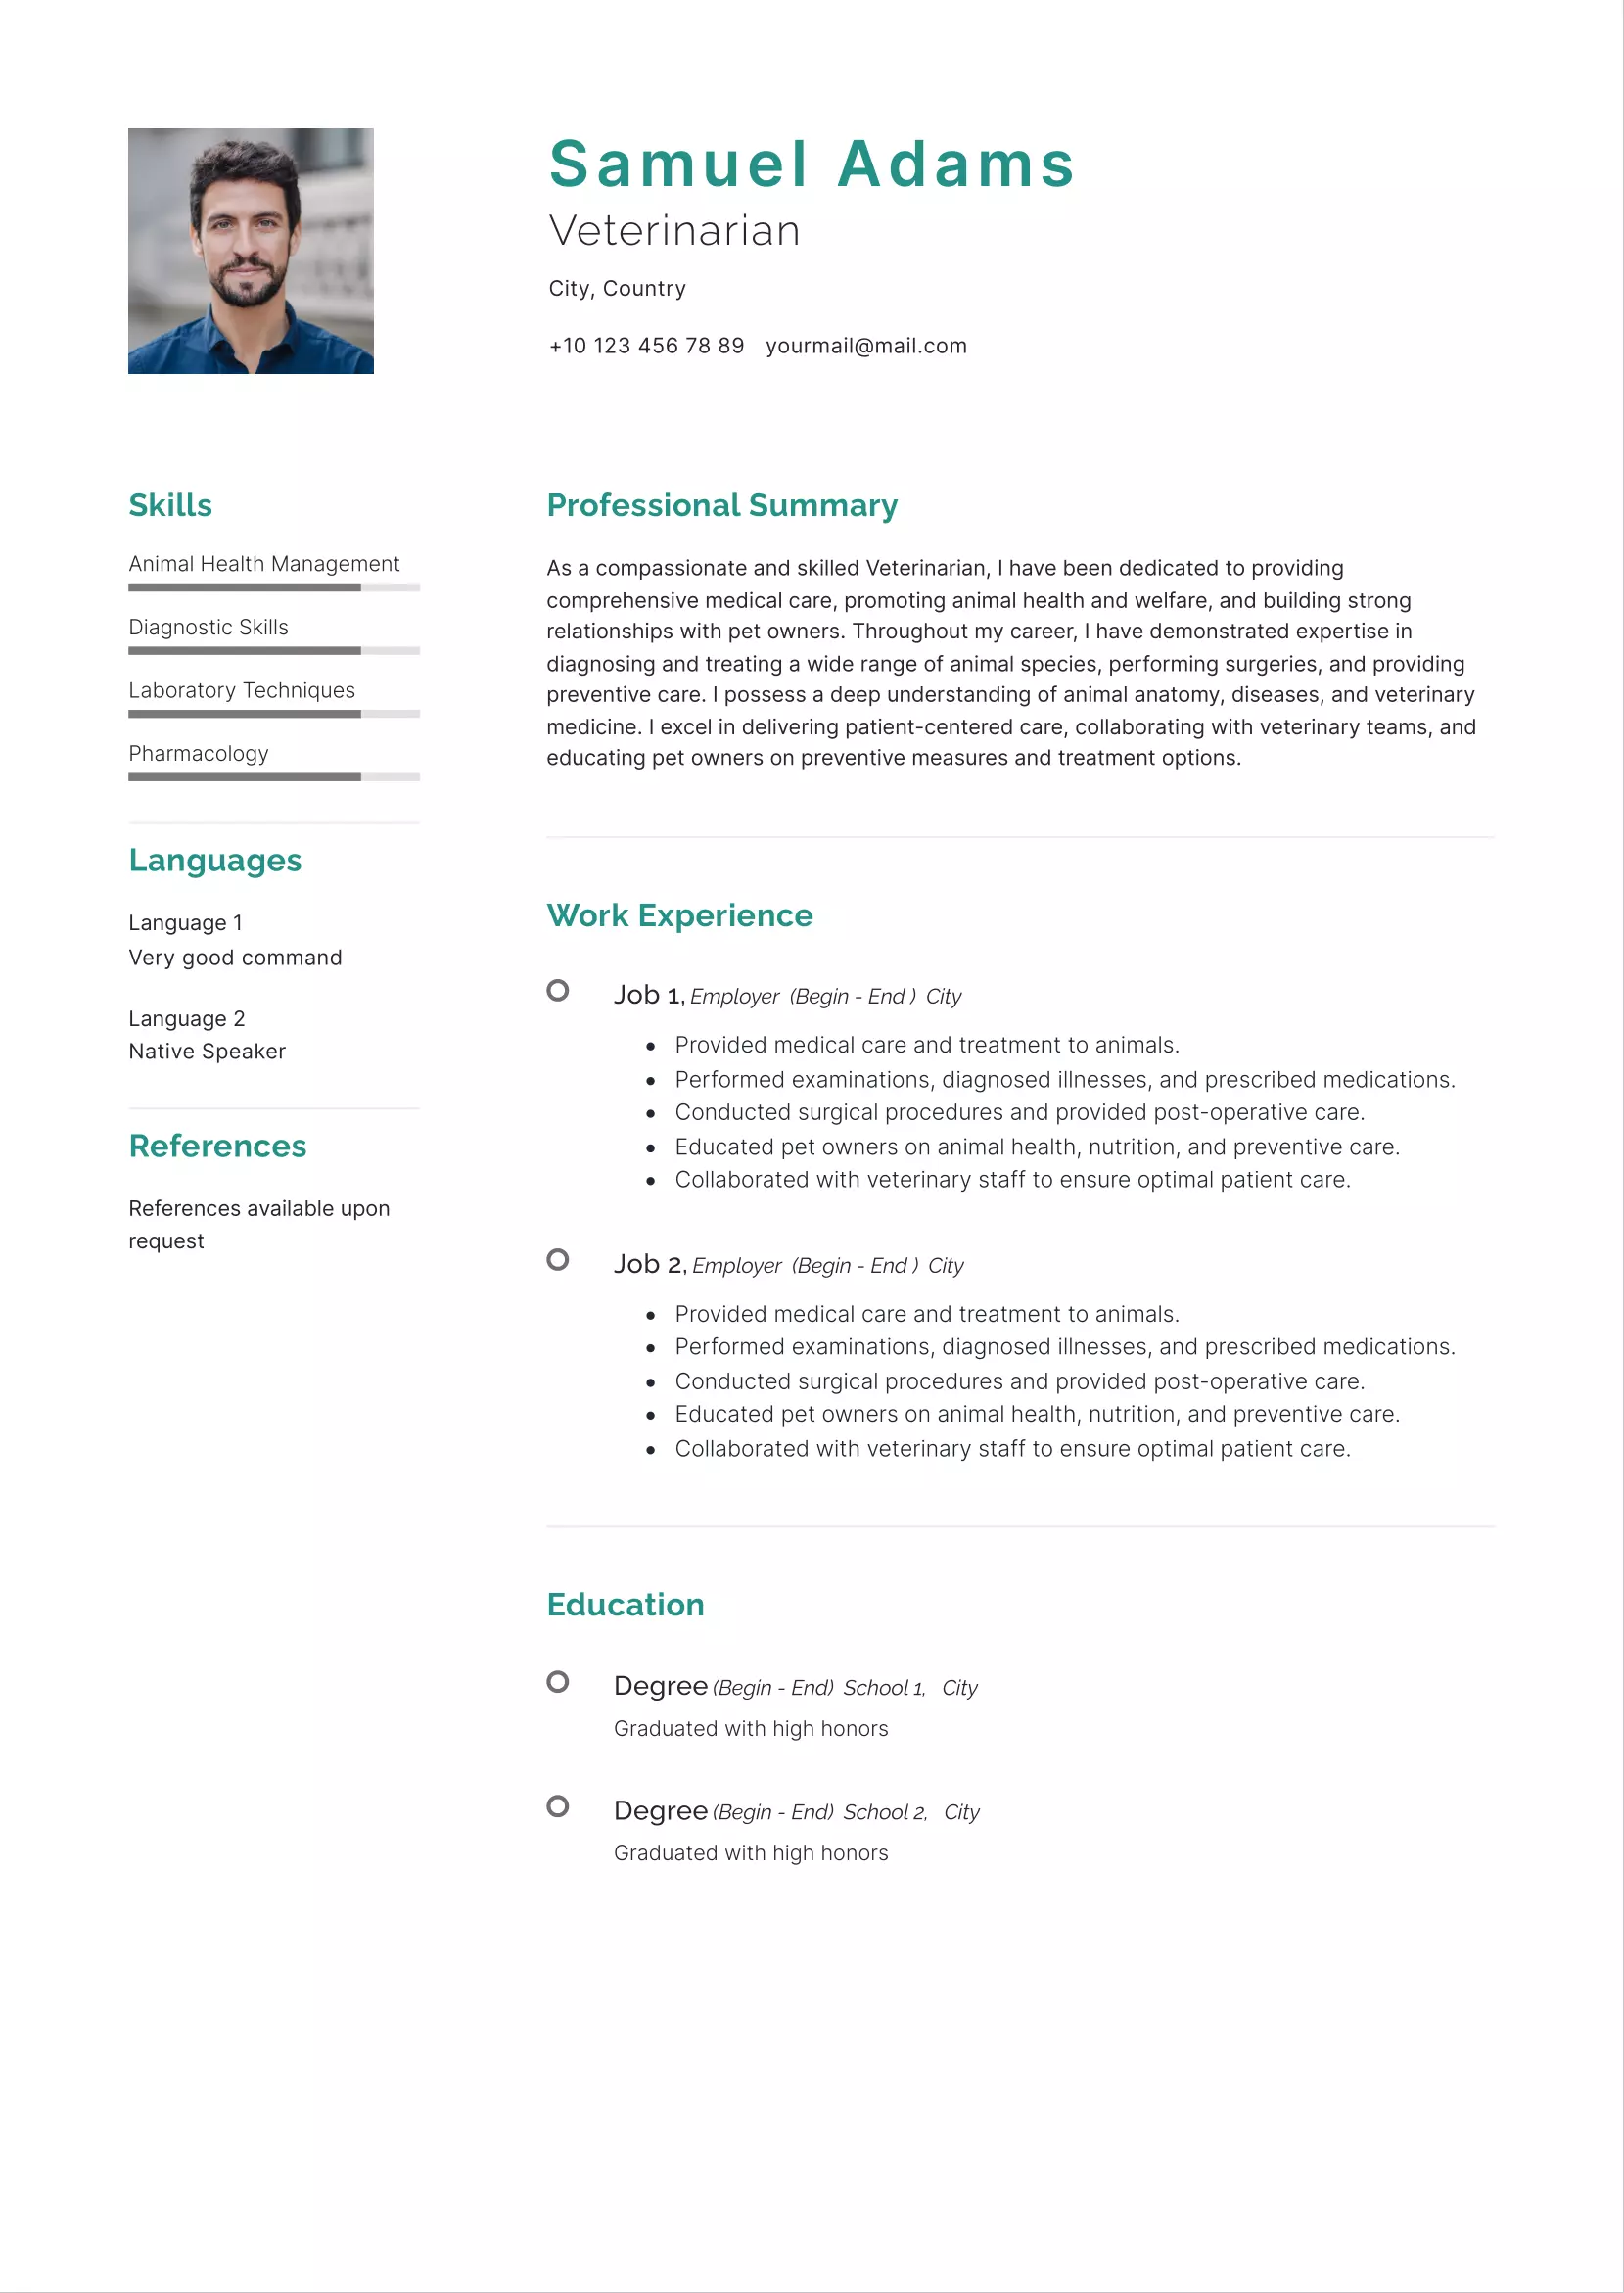 Veterinarian resume CV